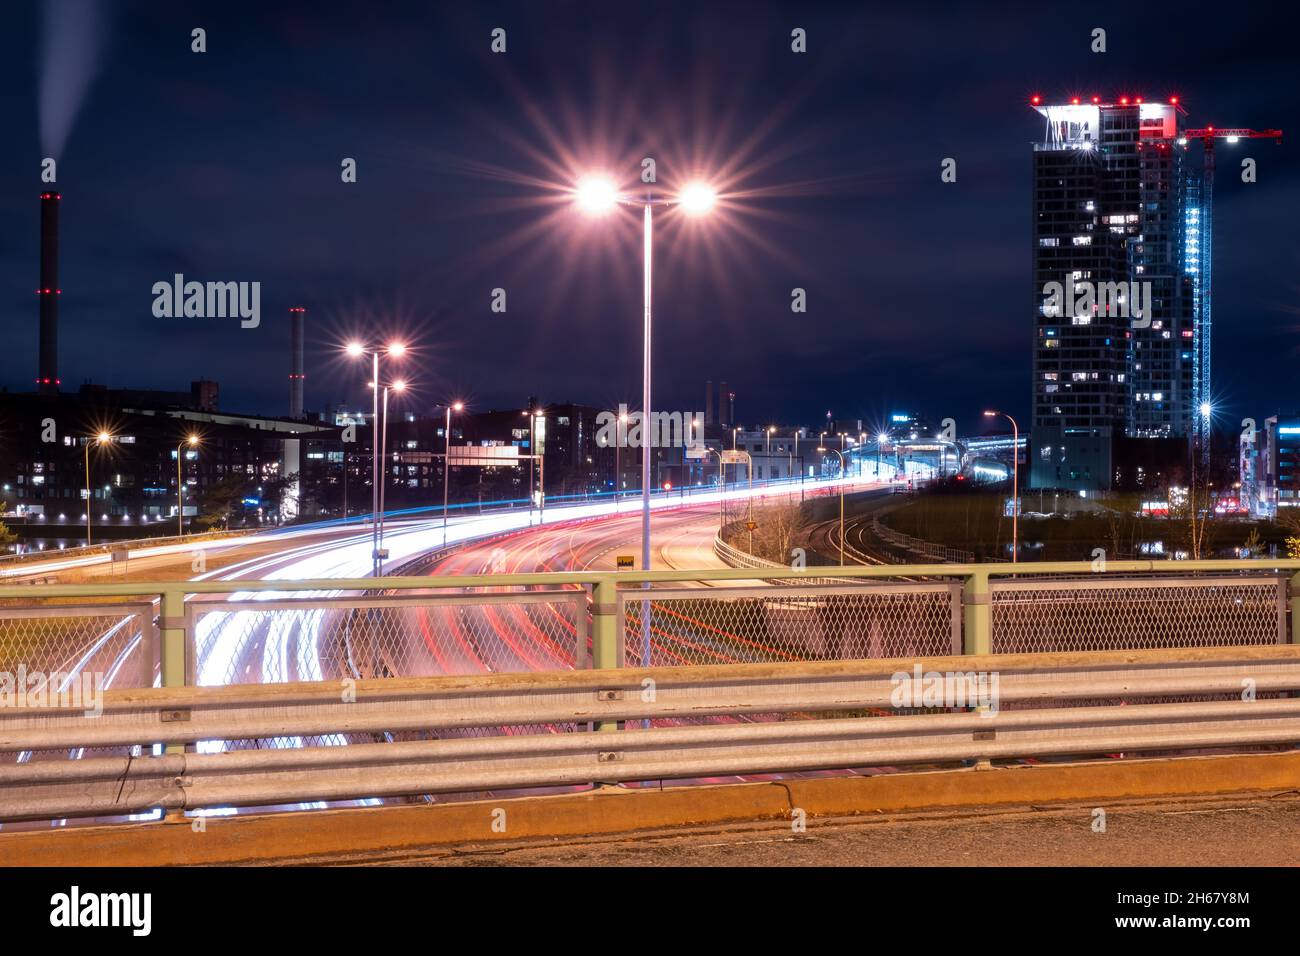 Helsinki / Finnland - 13. NOVEMBER 2021: Umgehungsfahrzeuge, die leichte Wege auf der Autobahn werfen, während der moderne Stadtteil im Hintergrund liegt Stockfoto